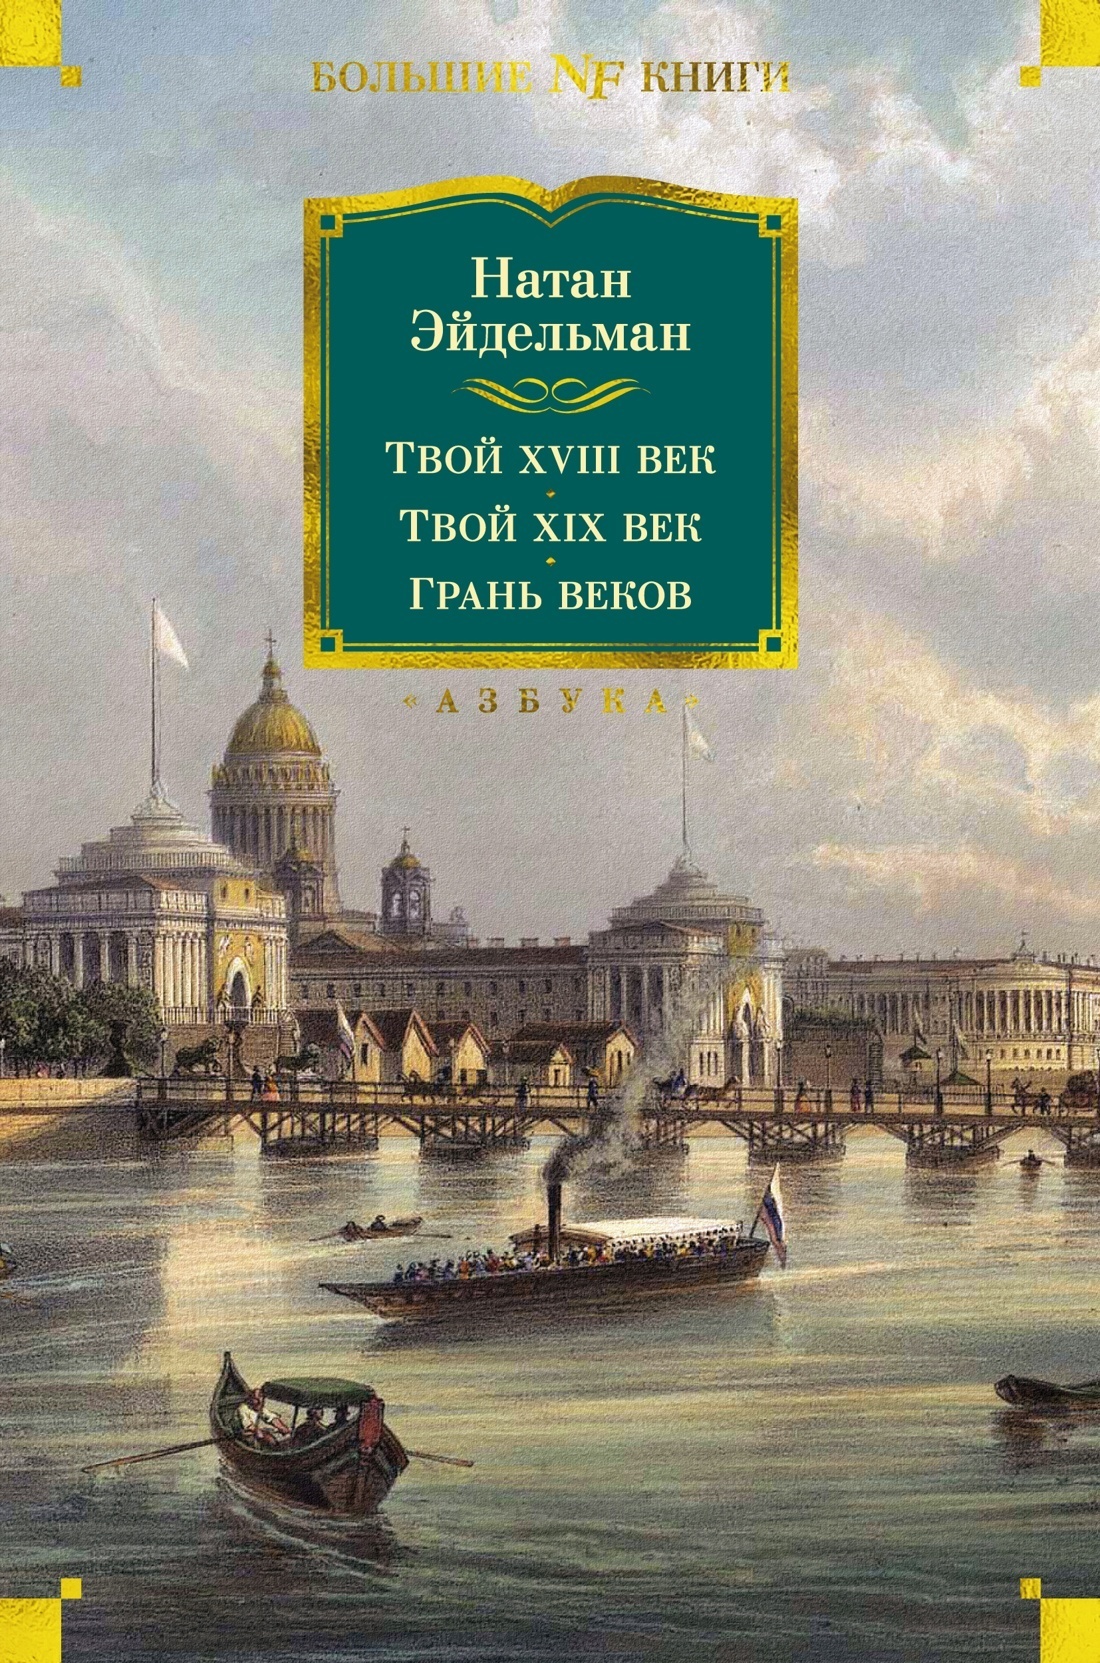 Русские мемуары. Избранные страницы. XVIII век (1988)